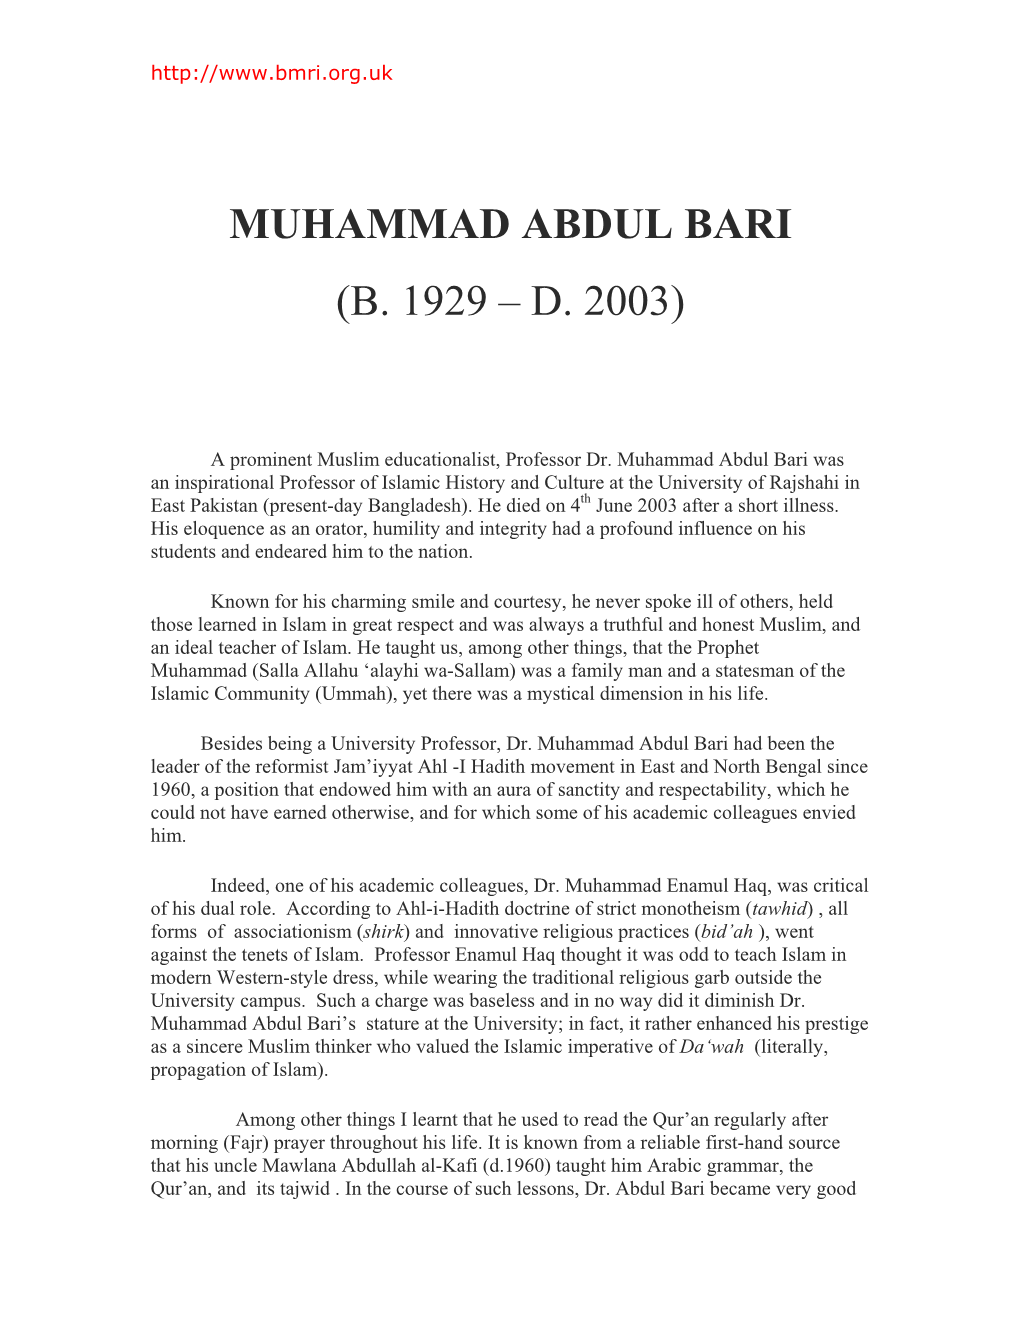 Muhammad Abdul Bari (B